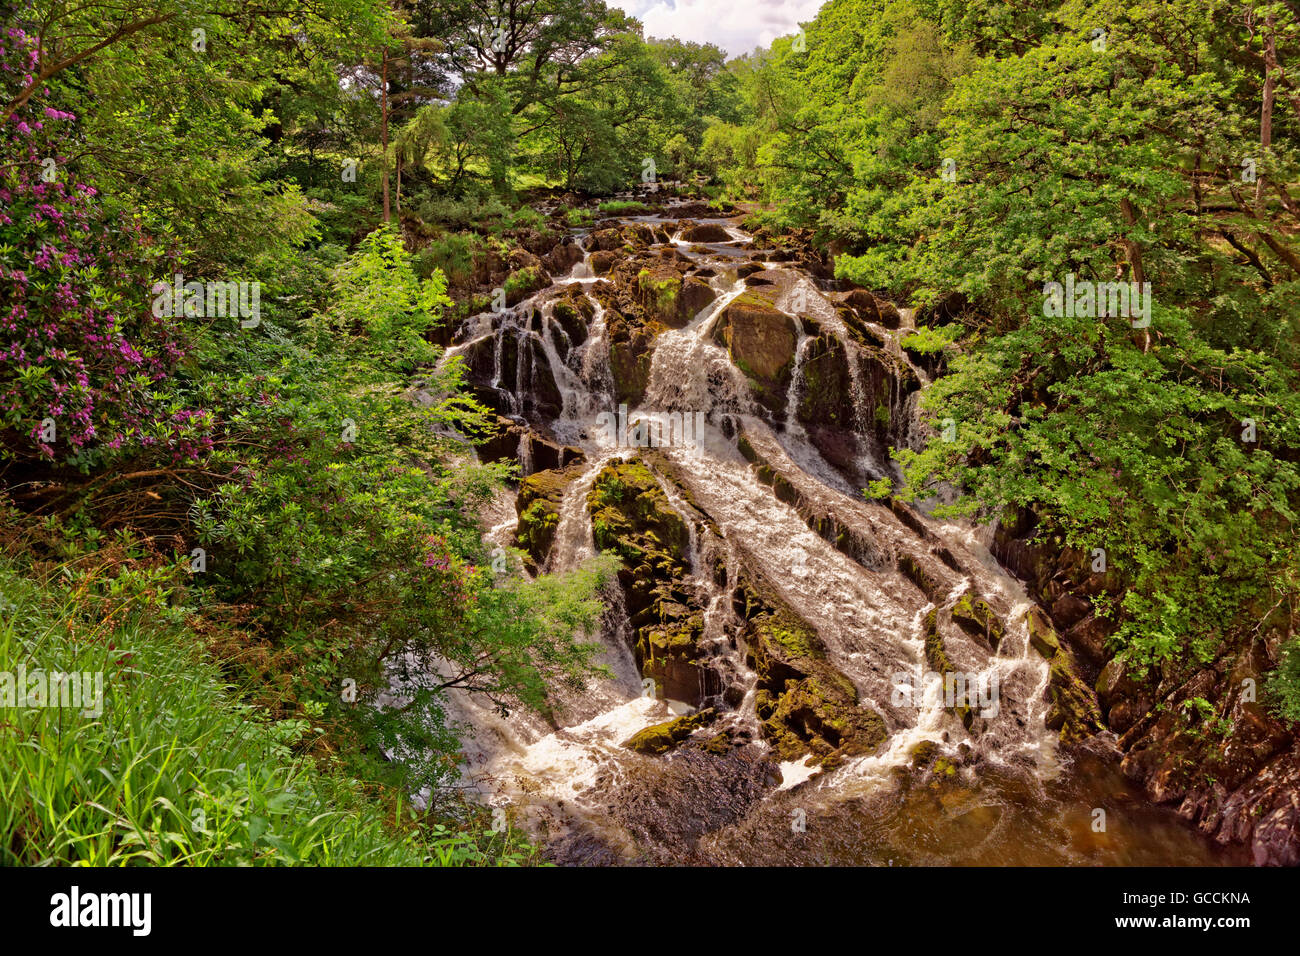 Swallow Falls at Betws-y-Coed, North Wales, UK Stock Photo